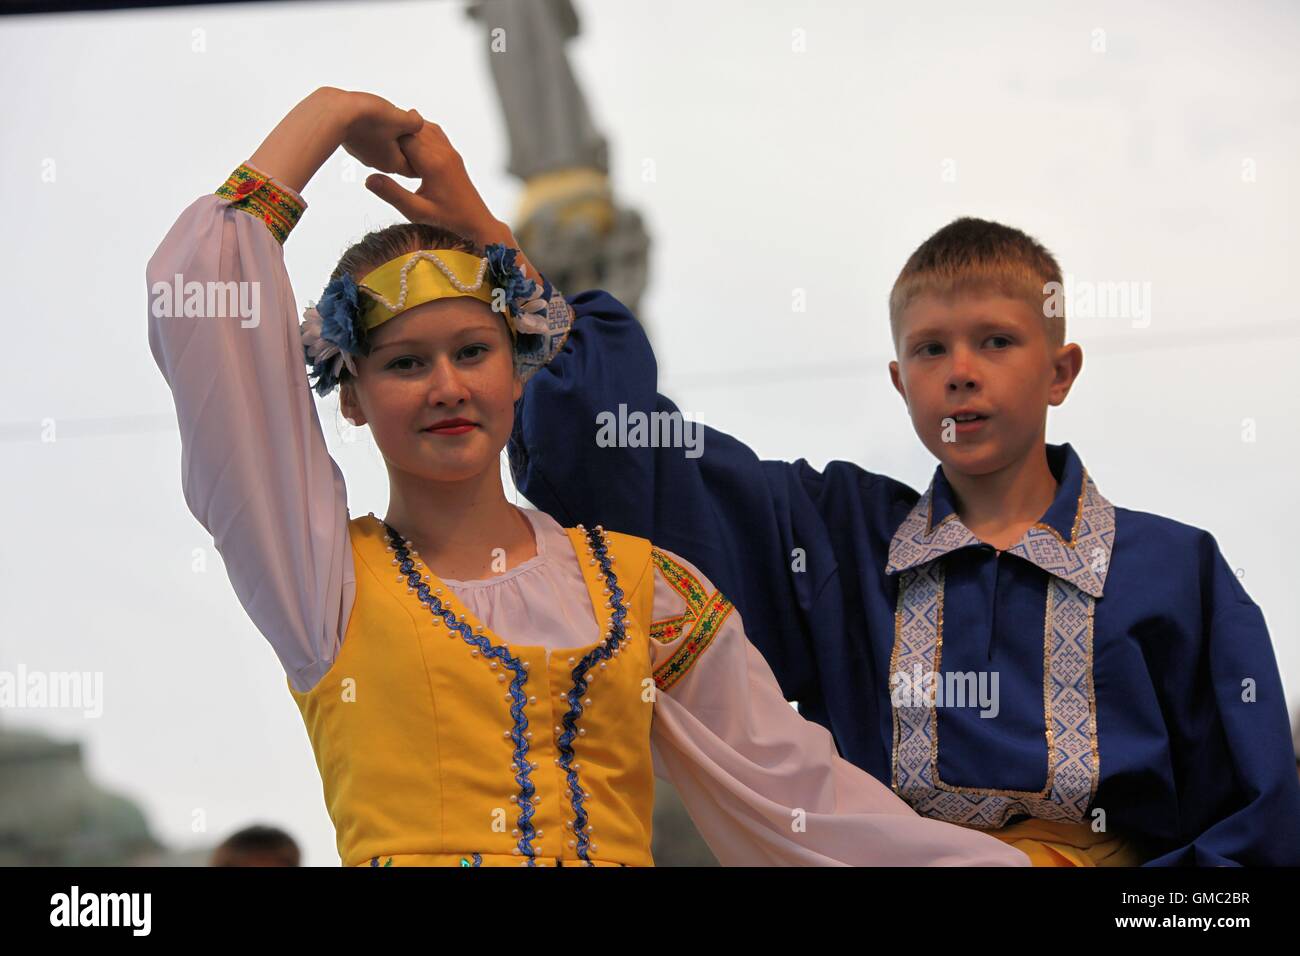 Les enfants de l'ensemble folklorique ukrainien PERLINA à partir de la ville de Lubny (région de Poltava) danser à l'Cassovia Folkfest. Banque D'Images